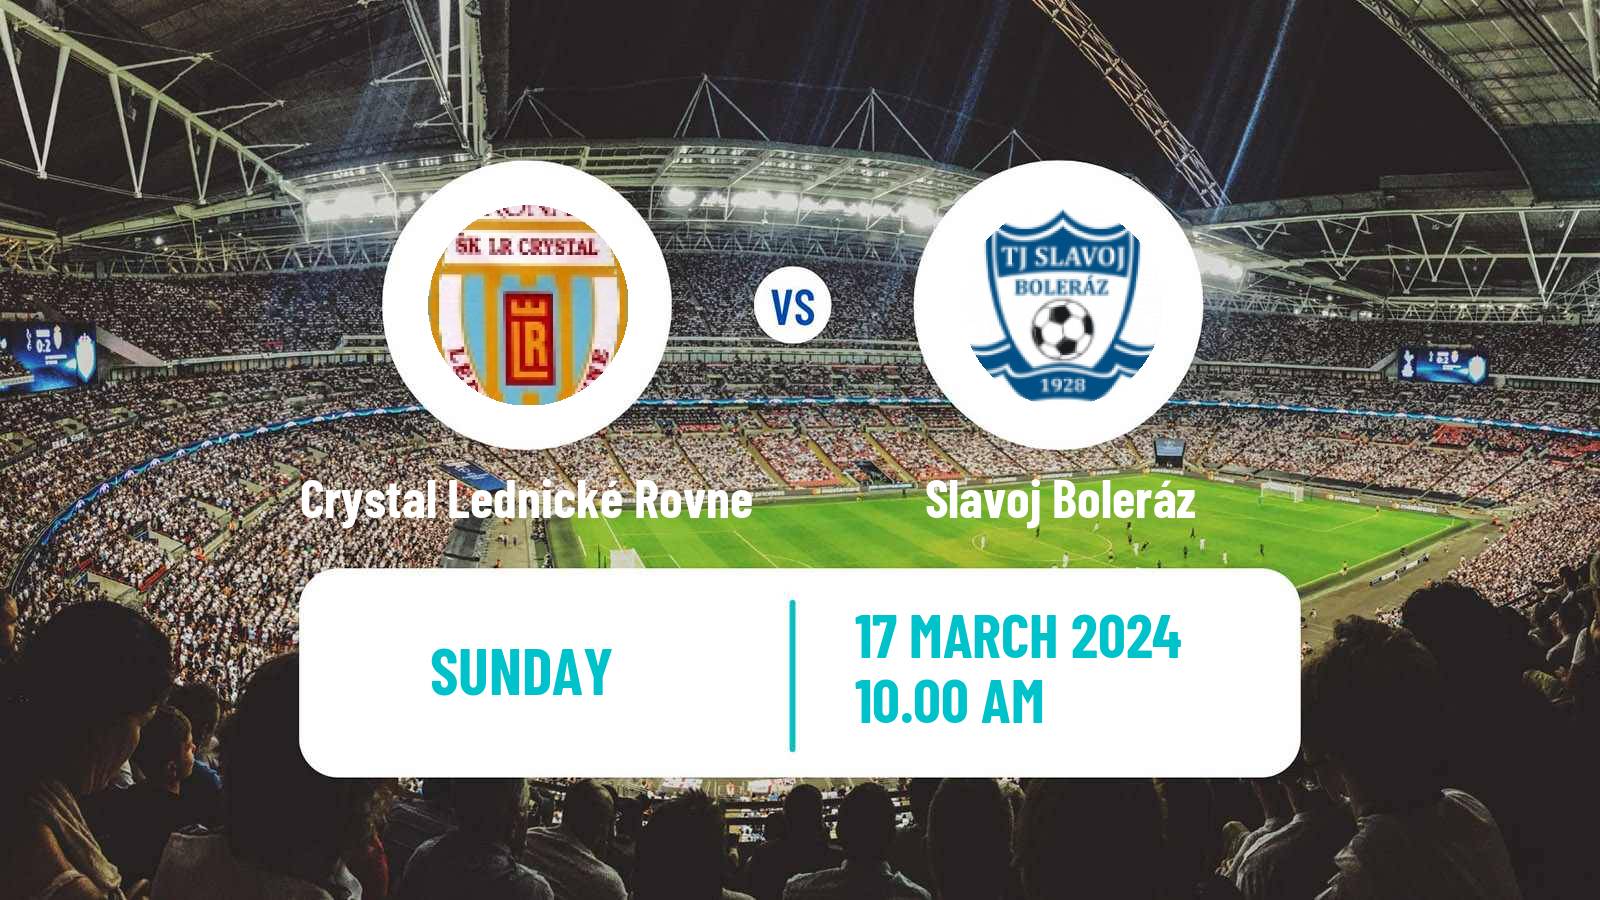 Soccer Slovak 4 Liga West Crystal Lednické Rovne - Slavoj Boleráz